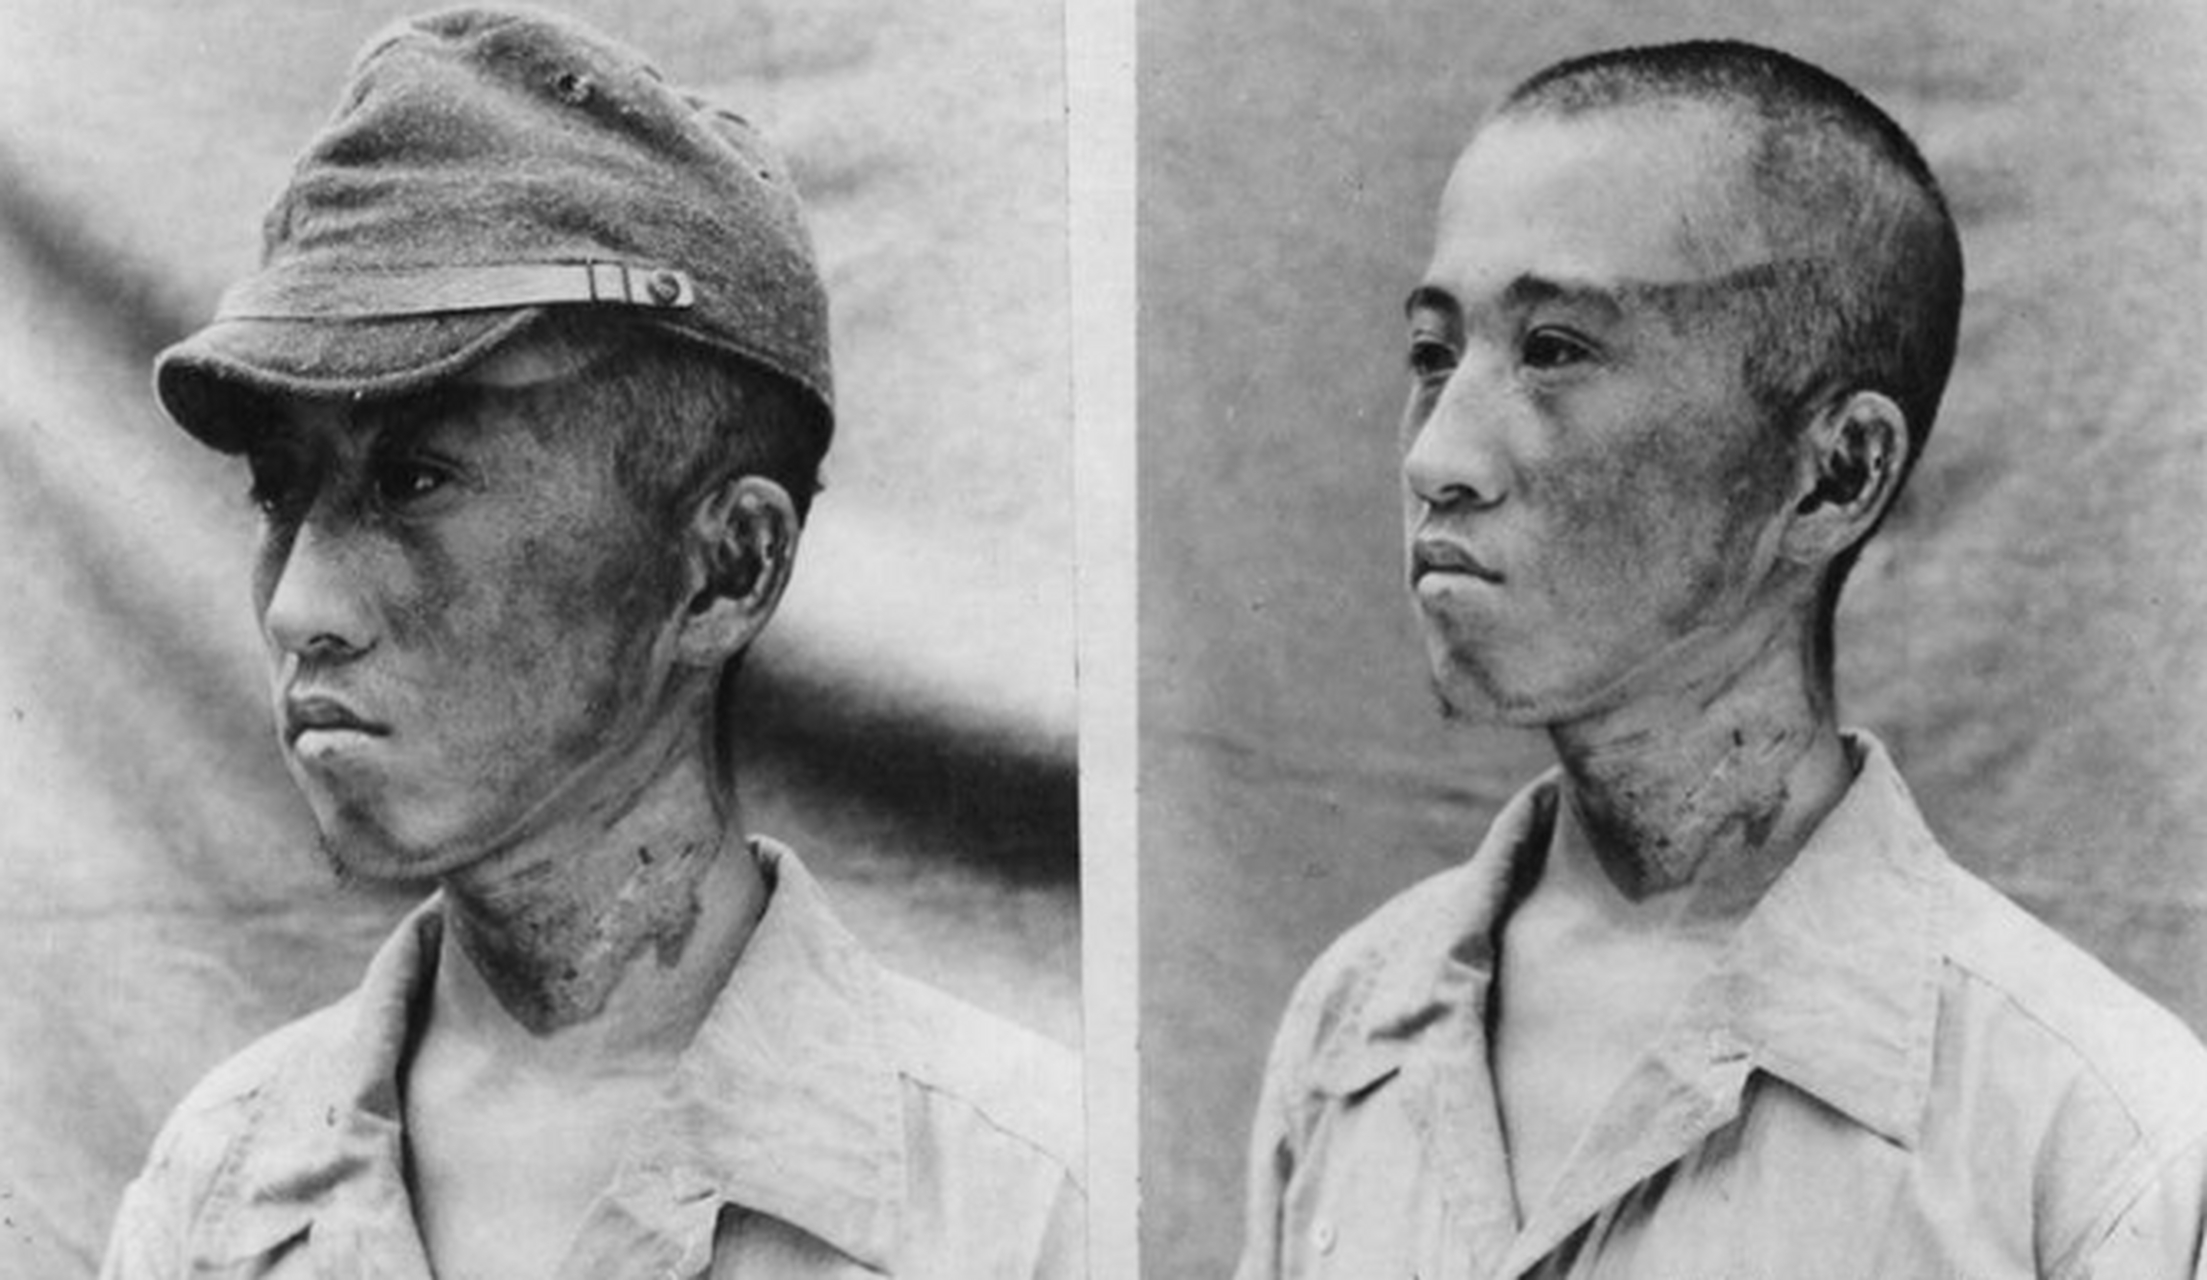 日本广岛核爆幸存者:眼睛瞬间烧成两窟窿,基因突变怪病层出不穷 1945